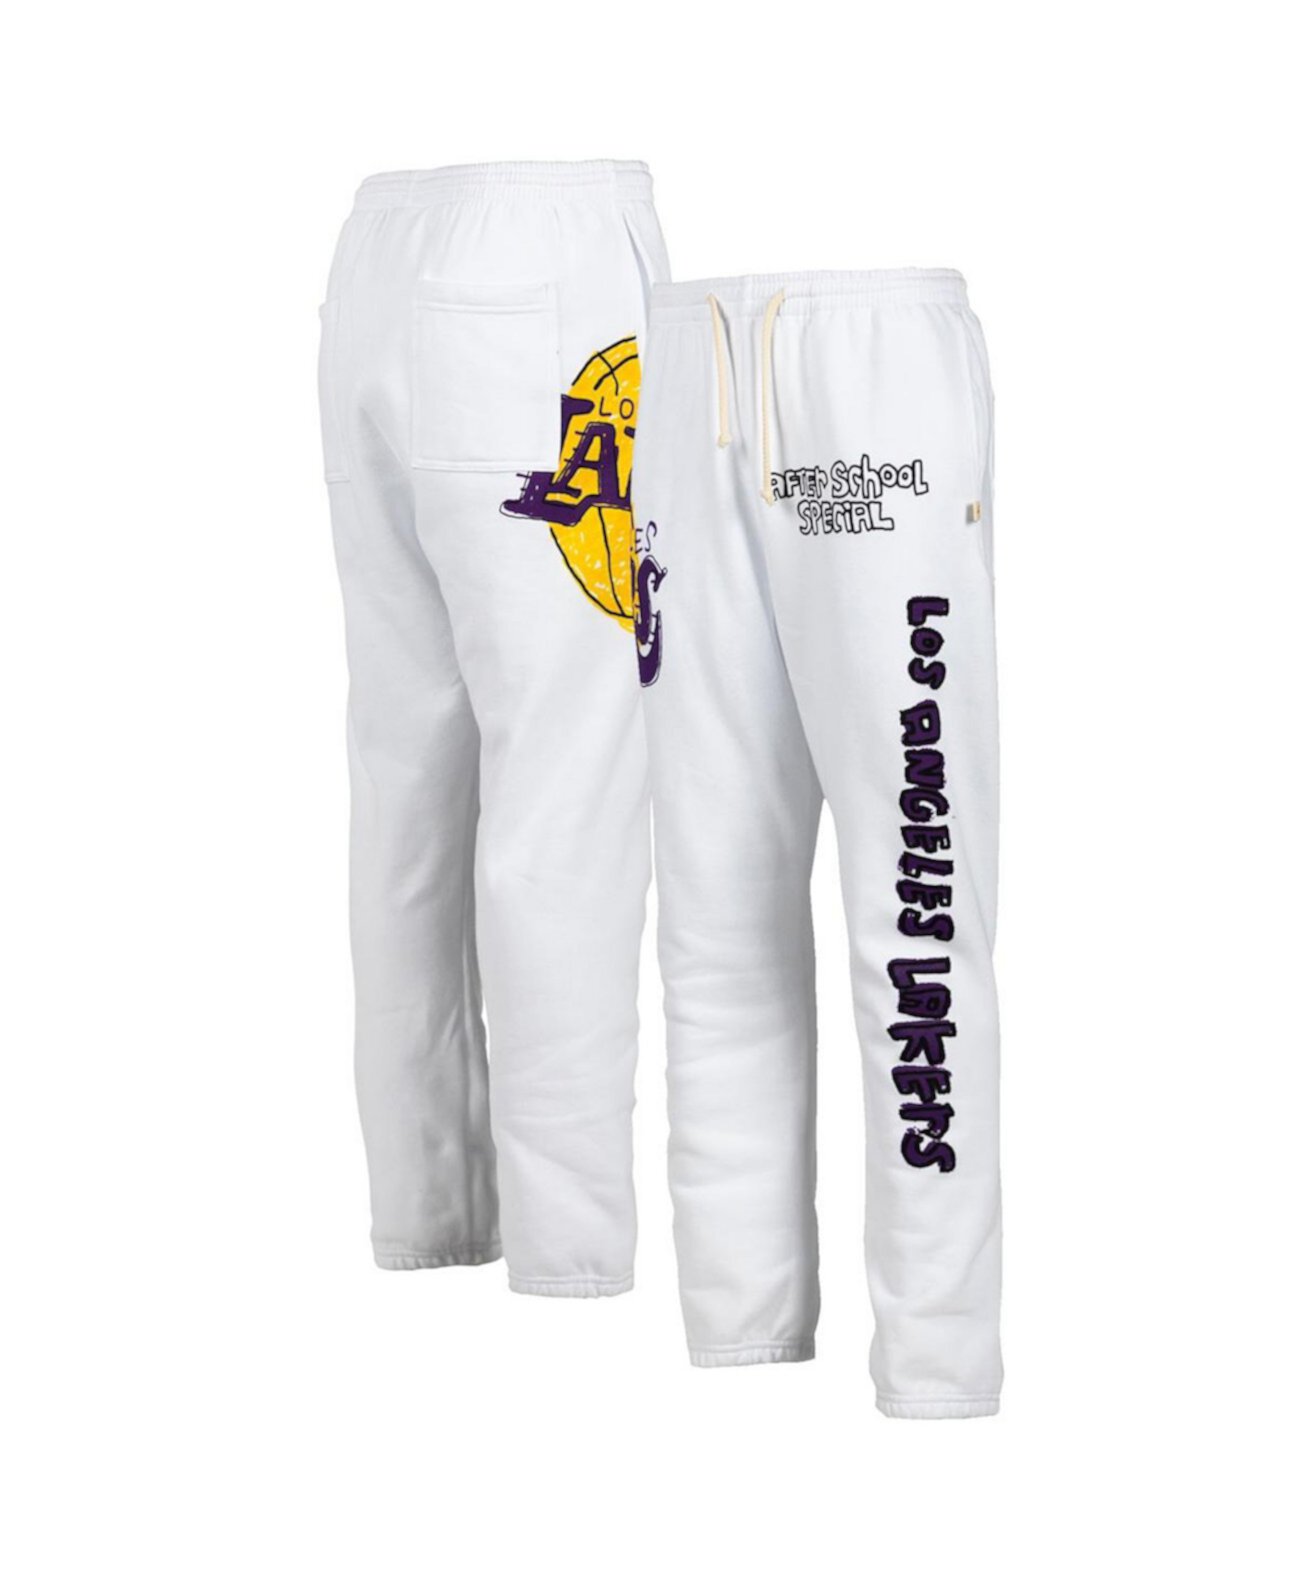 Мужские белые спортивные штаны Los Angeles Lakers After School Special